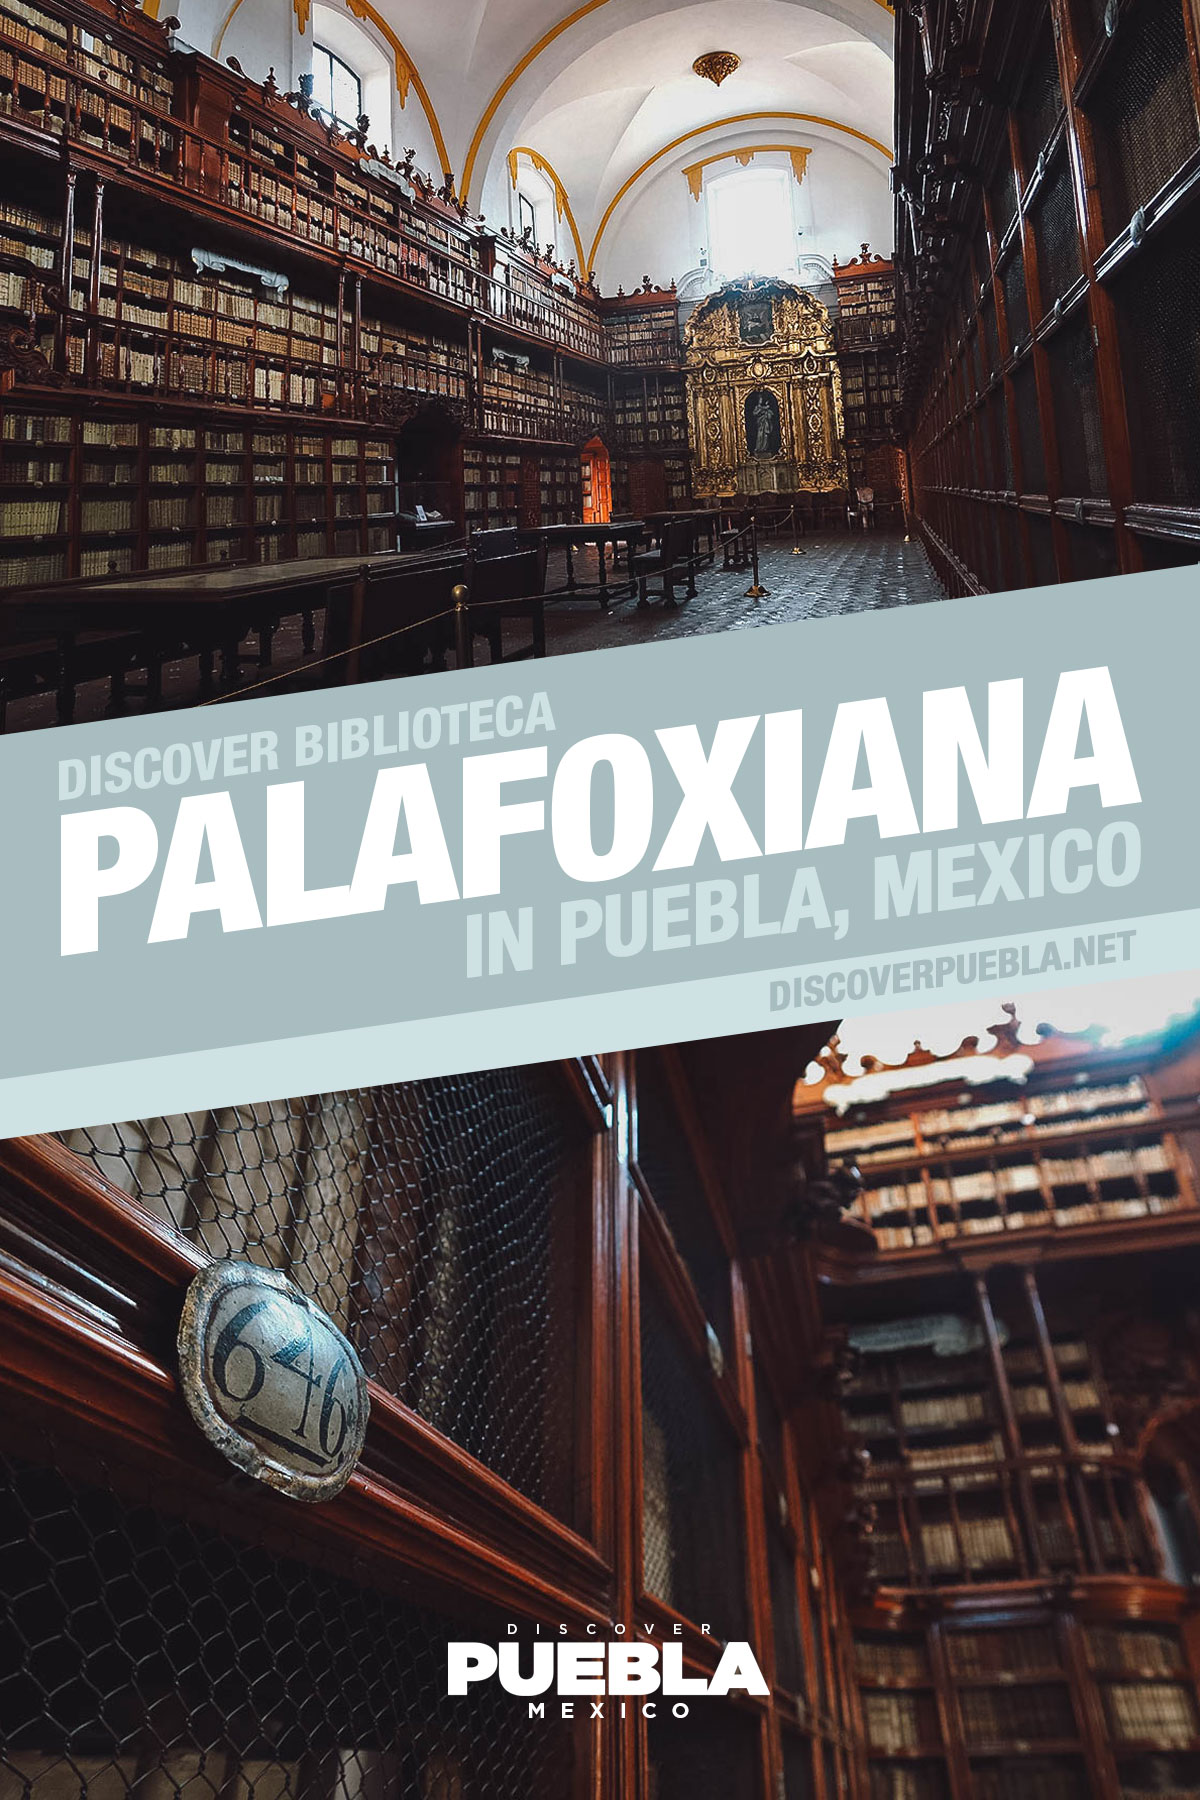 Mayor plan benefit All About Biblioteca Palafoxiana in Puebla | Discover Puebla, Mexico